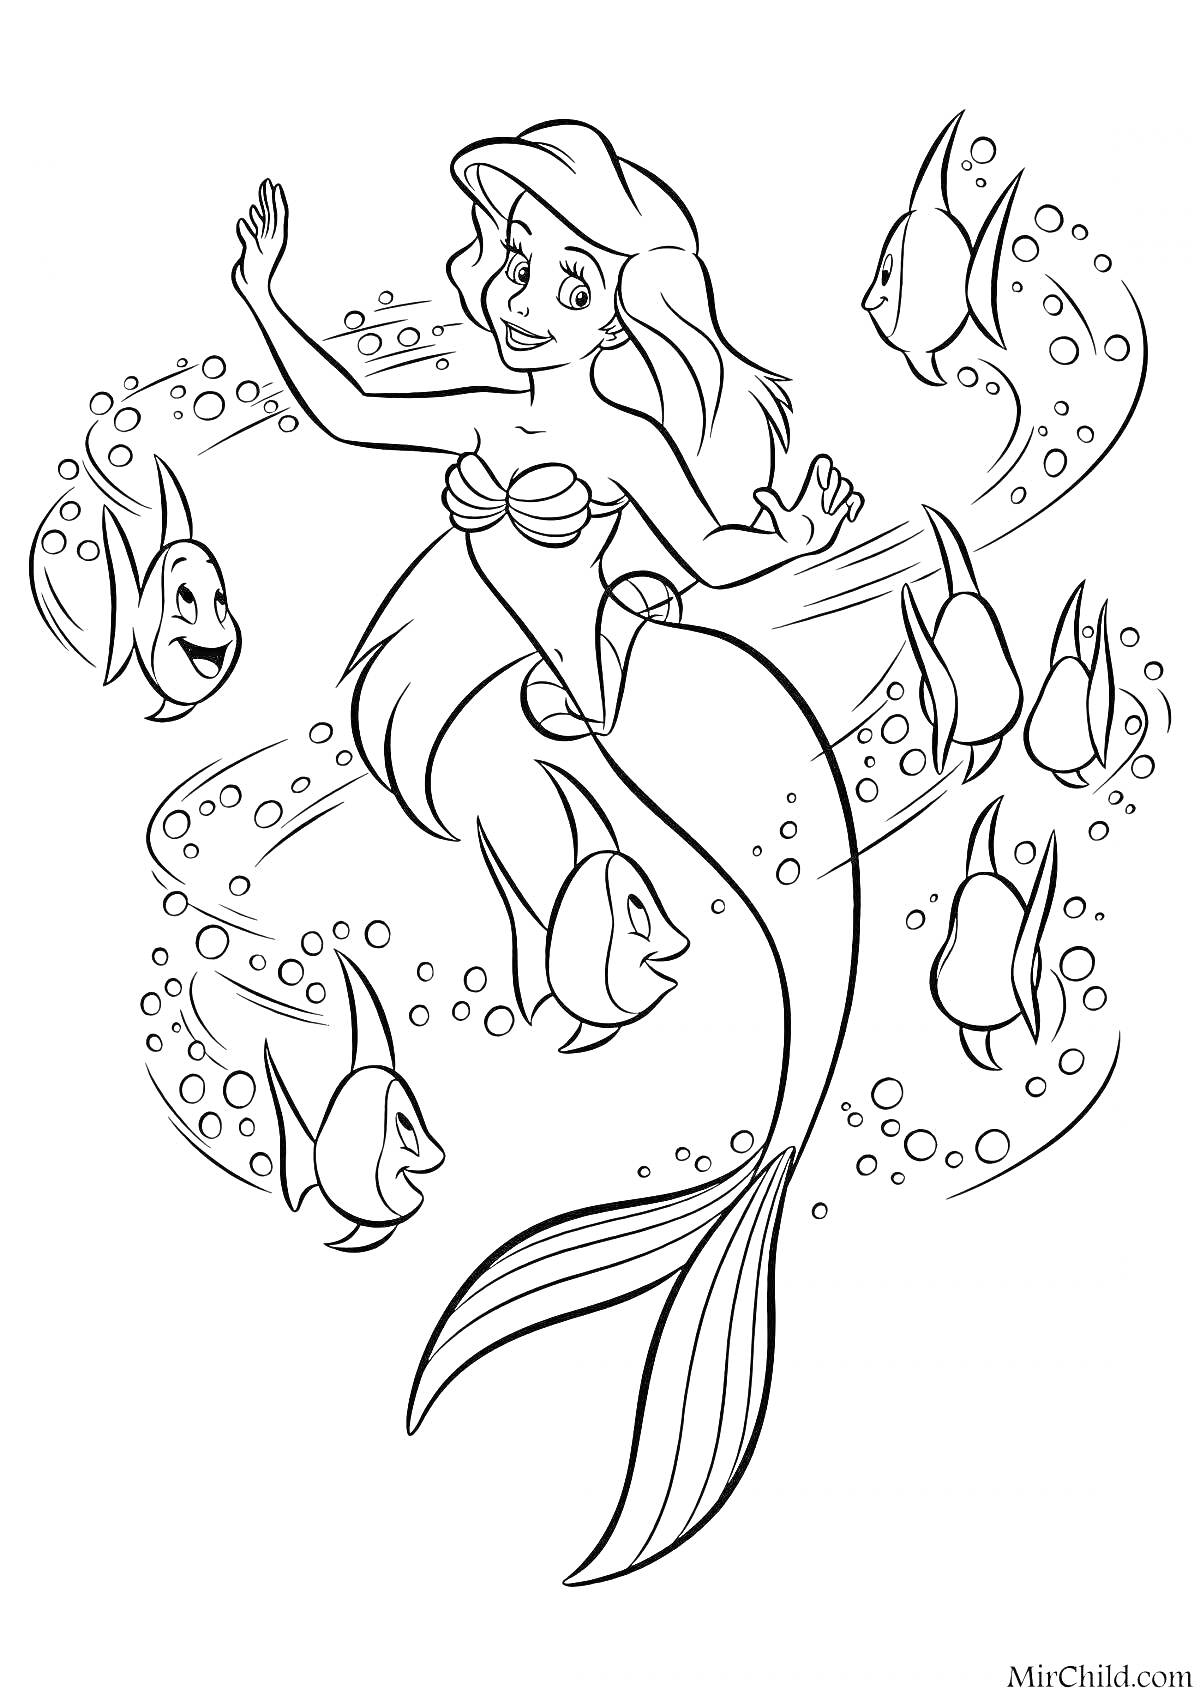 Раскраска Русалка Ариэль с пятью рыбками и пузырьками